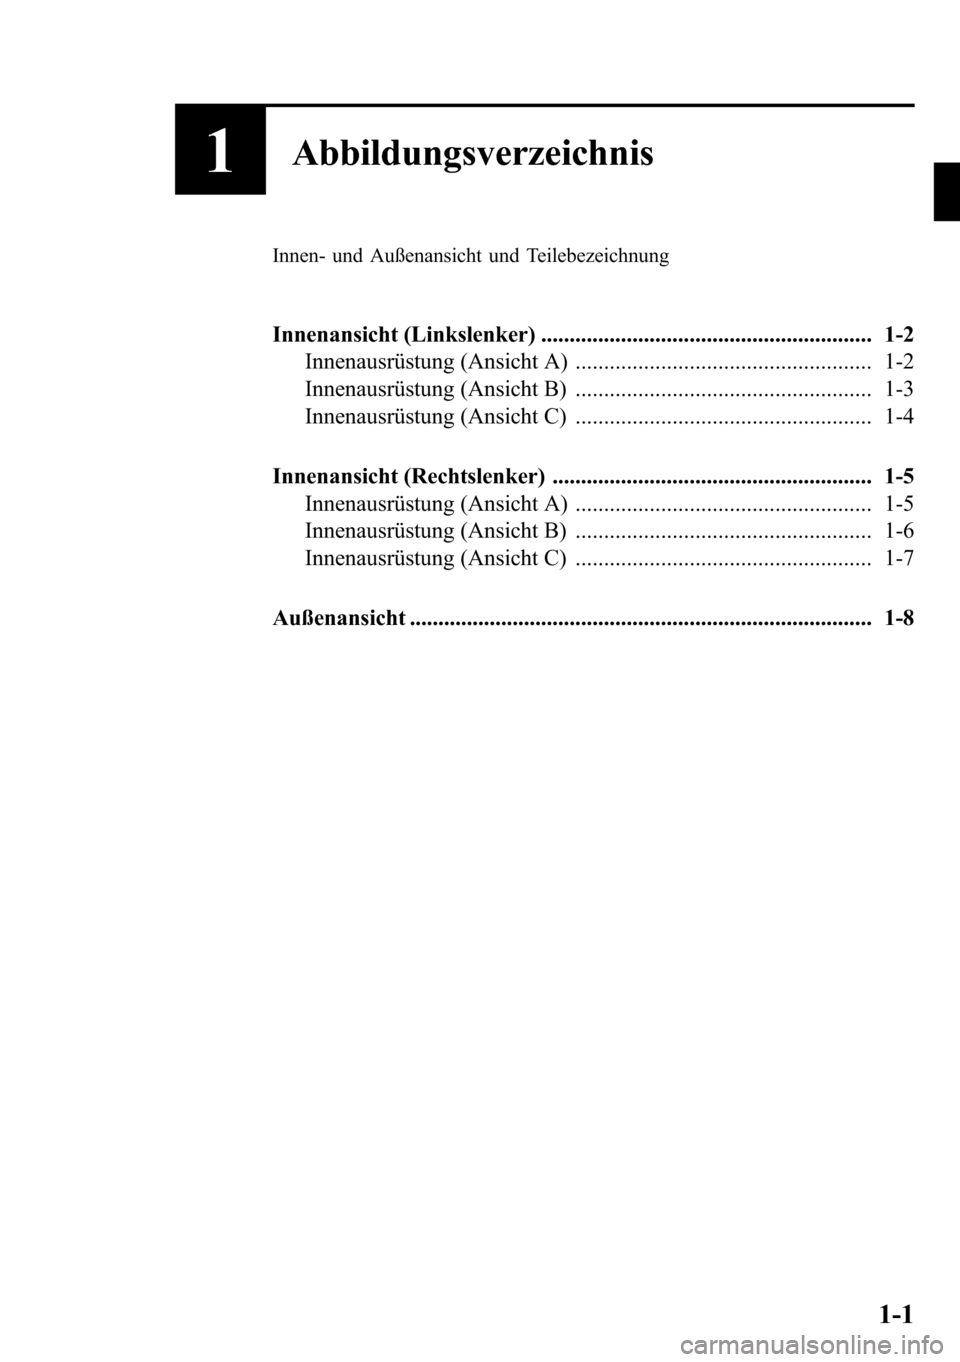 MAZDA MODEL CX-5 2013  Betriebsanleitung (in German) 1Abbildungsverzeichnis
Innen- und Außenansicht und Teilebezeichnung
Innenansicht (Linkslenker) .......................................................... 1-2
Innenausrüstung (Ansicht A) ............